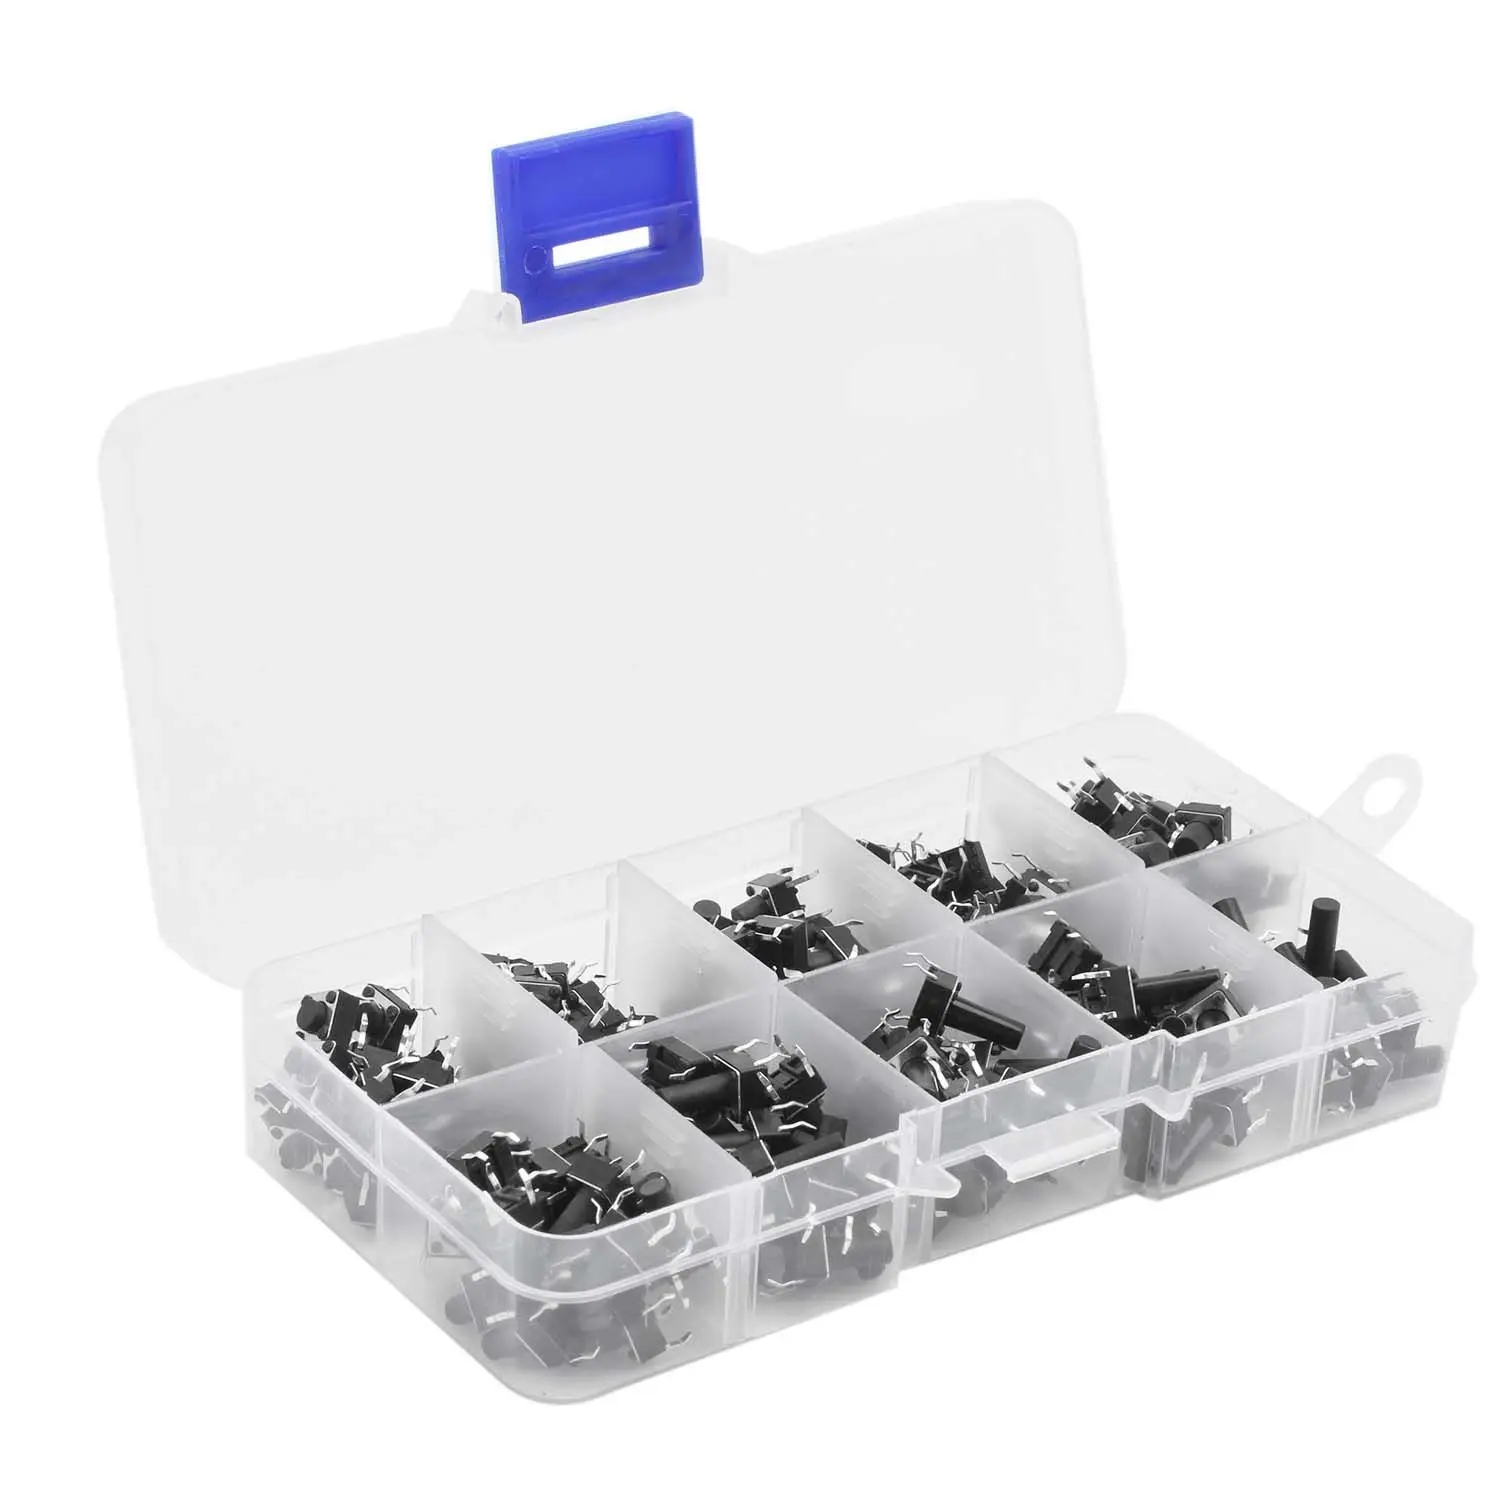 

Wholesales 10 Values 180PCS Tactile Push Button Switch Mini Momentary Tact Assortment Kit